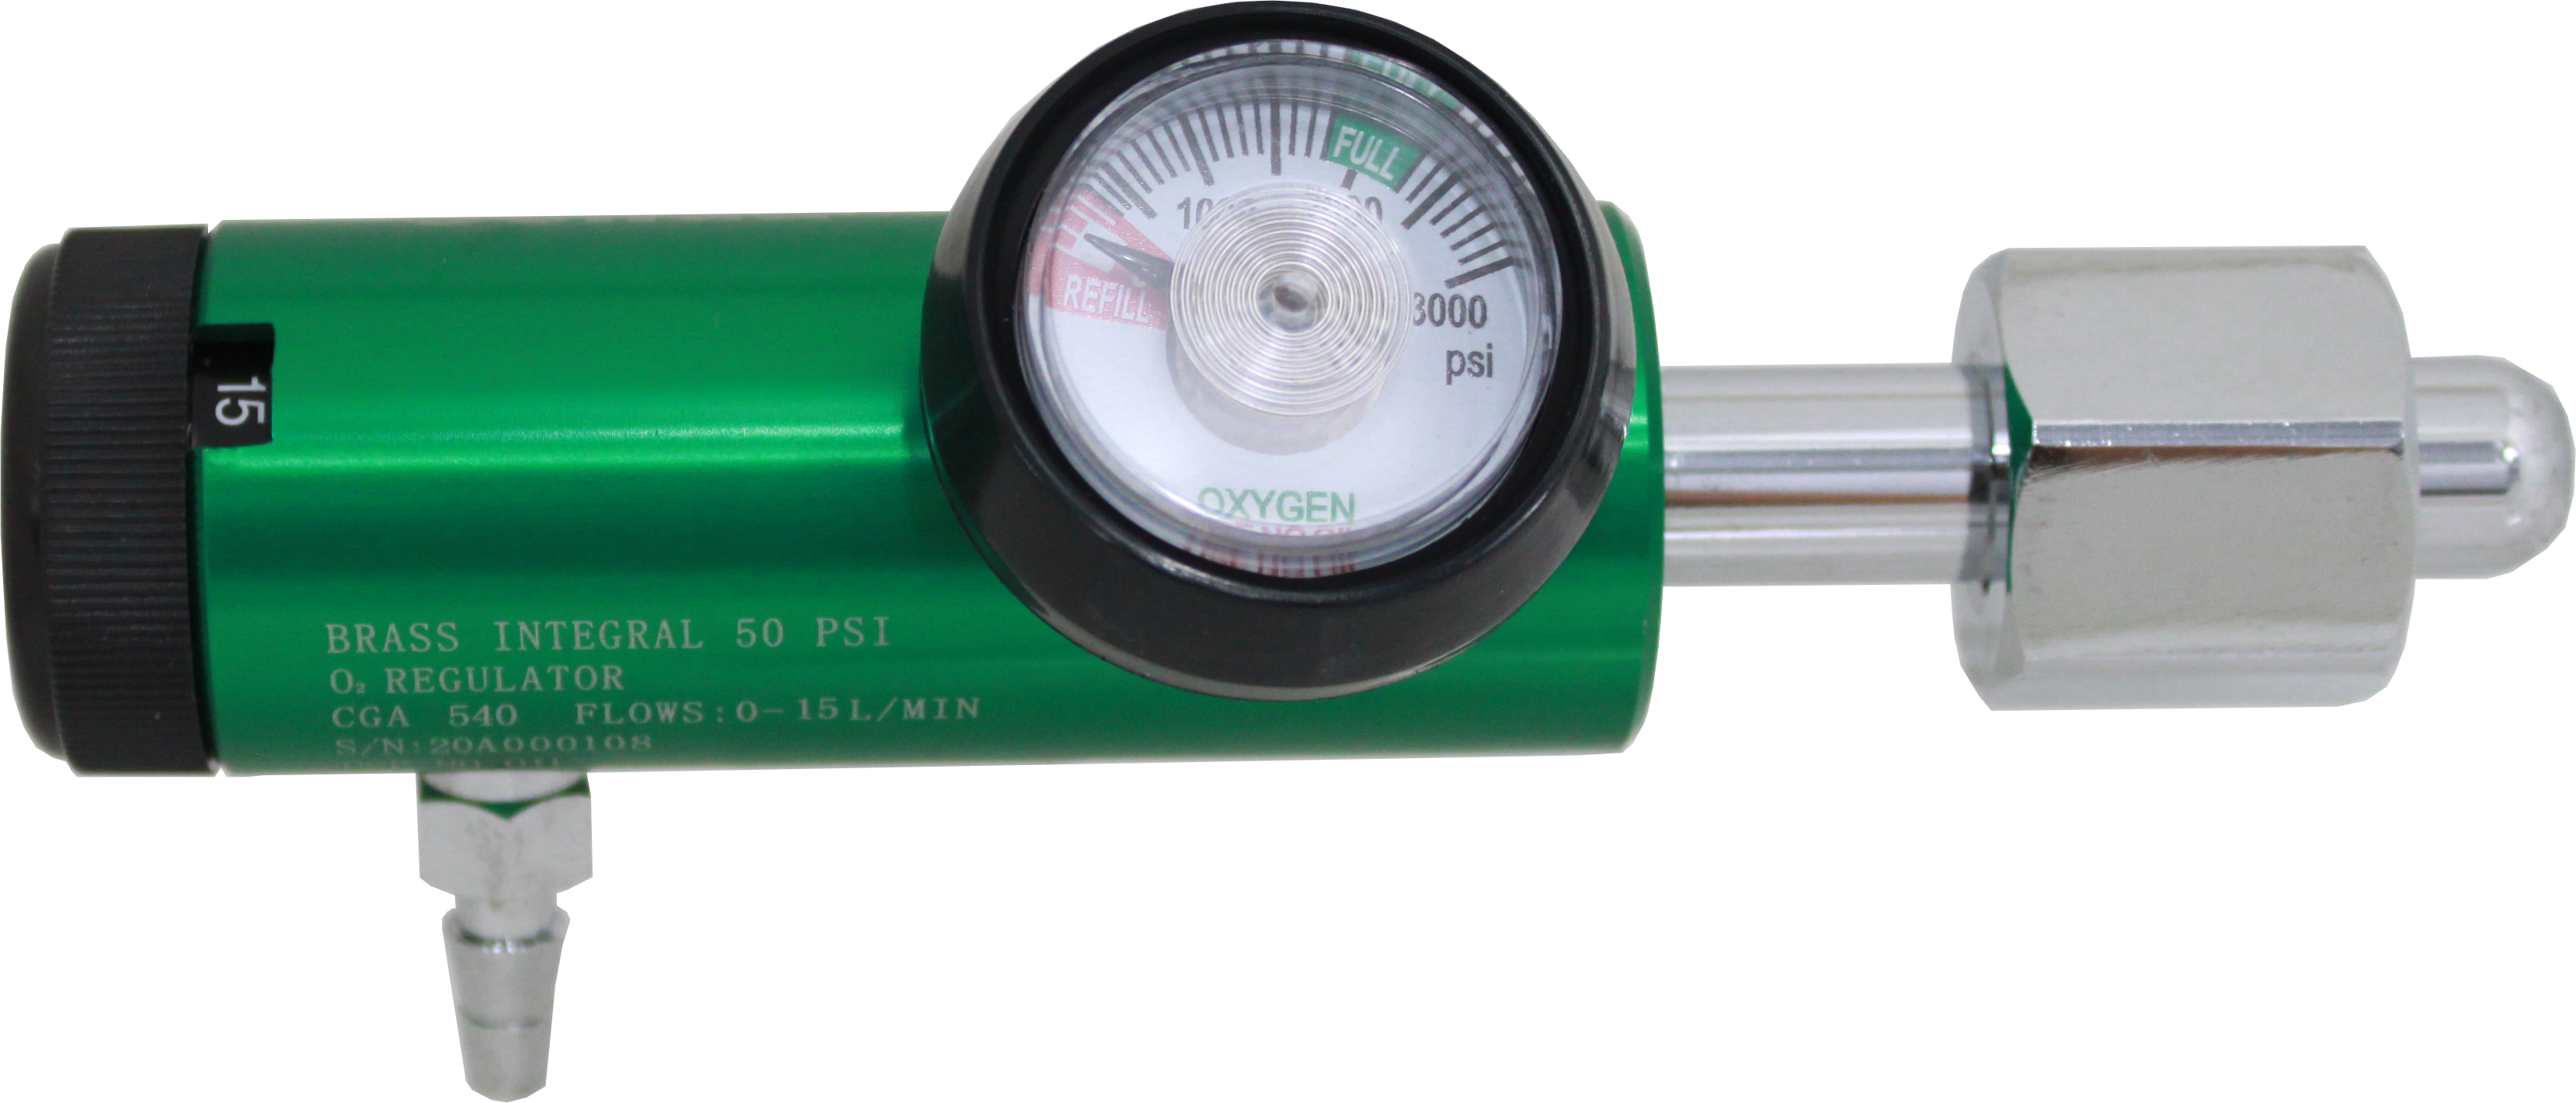 Solida O2 regulator click style (0-15 LPM 1 hose barb, CGA540)